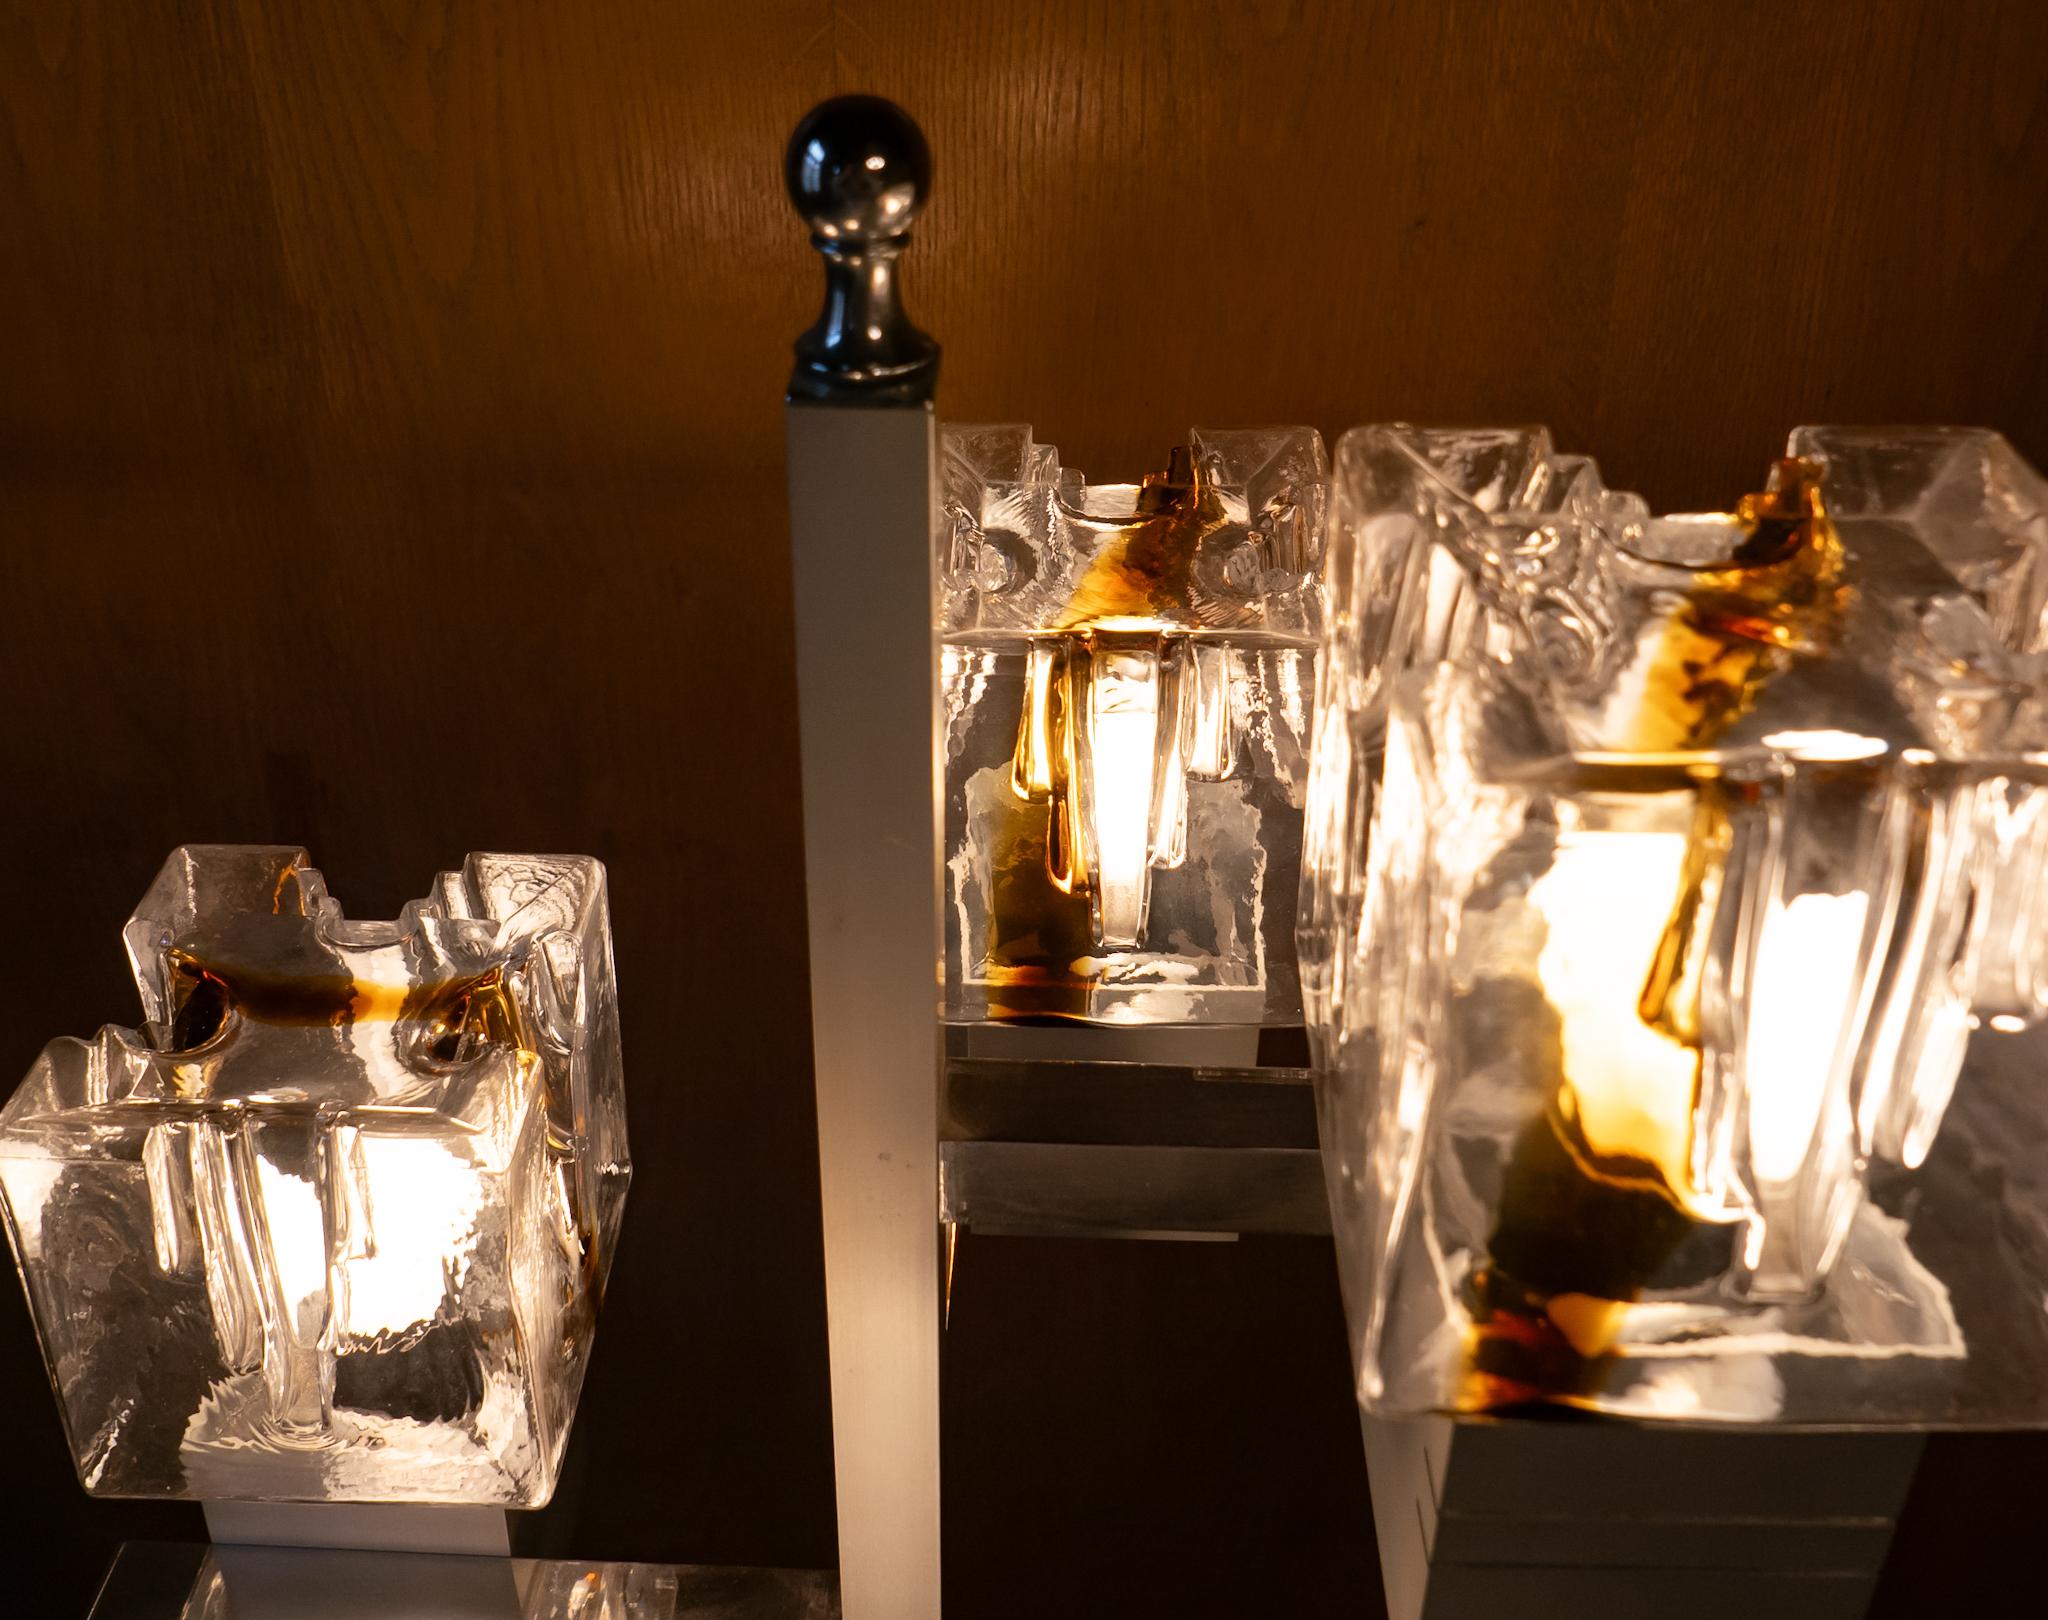 Lampadaire moderne du milieu du siècle en verre Murano chromé par AT&T, Italie Années 1970.

Ce lampadaire italien de Toni Zuccheri, réalisé avec une attention méticuleuse aux détails et une élégance inégalée, a été produit dans les années 1970 par